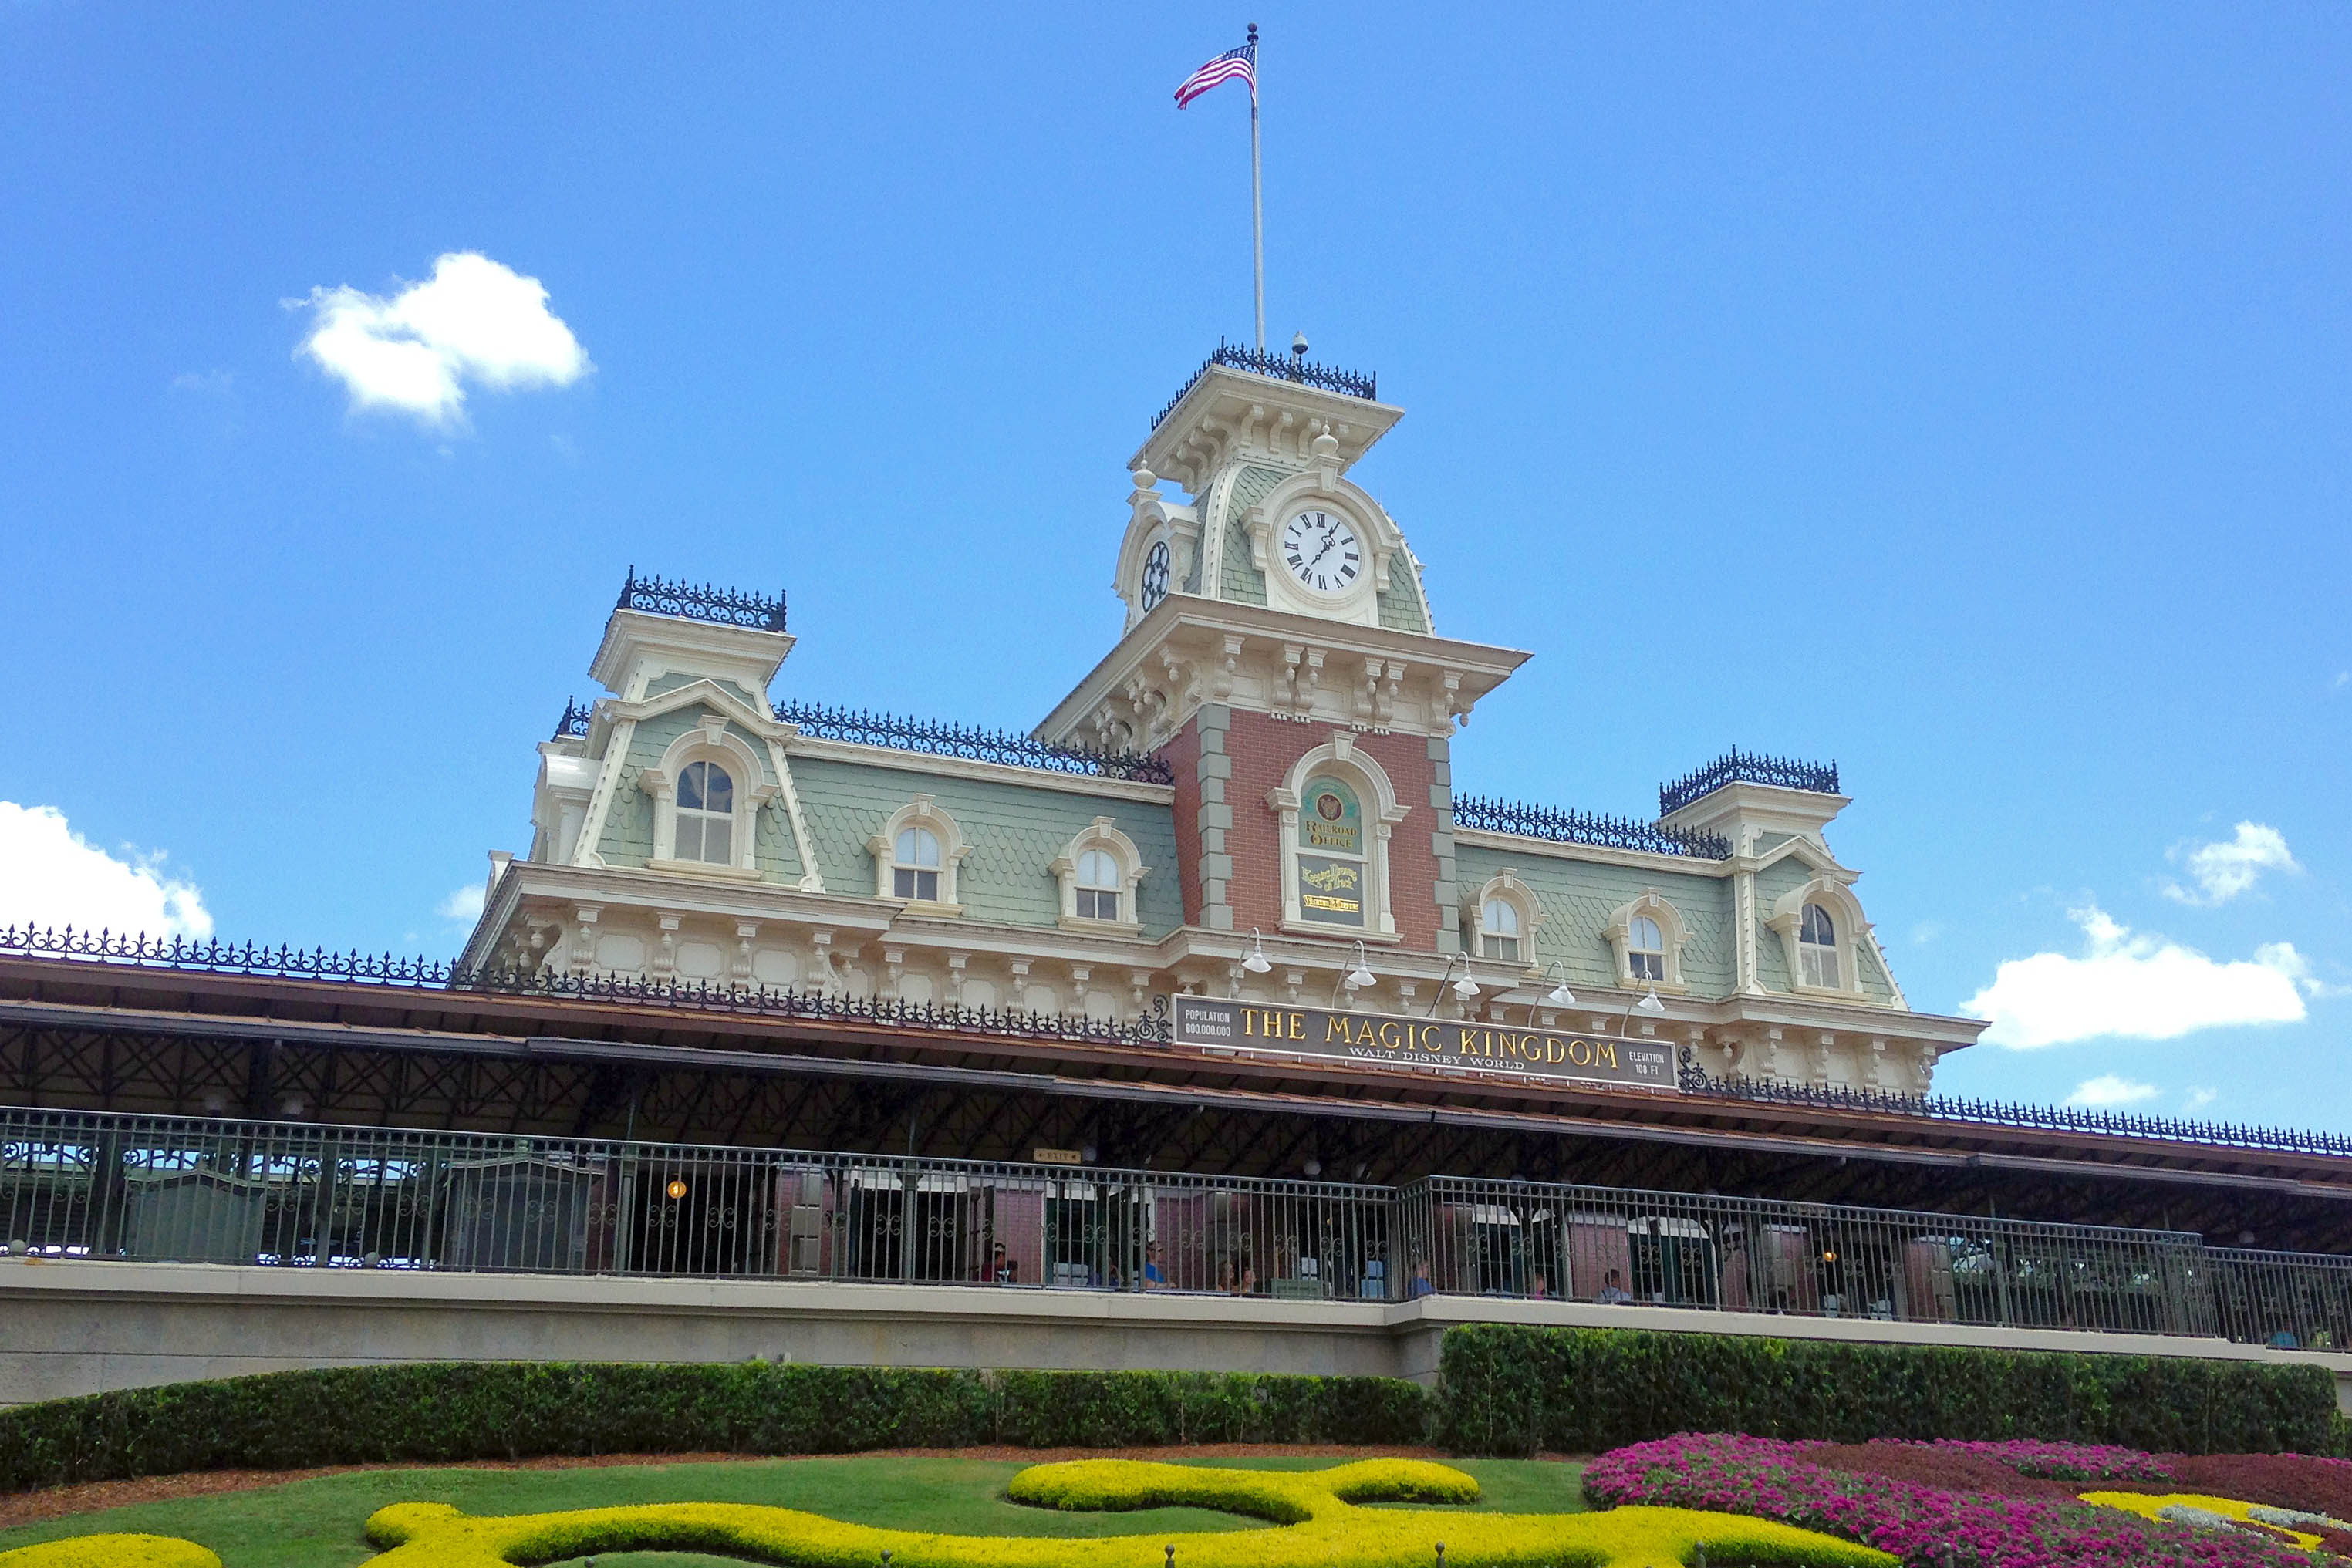 Disney Railroad Walt Disney World i Orlando